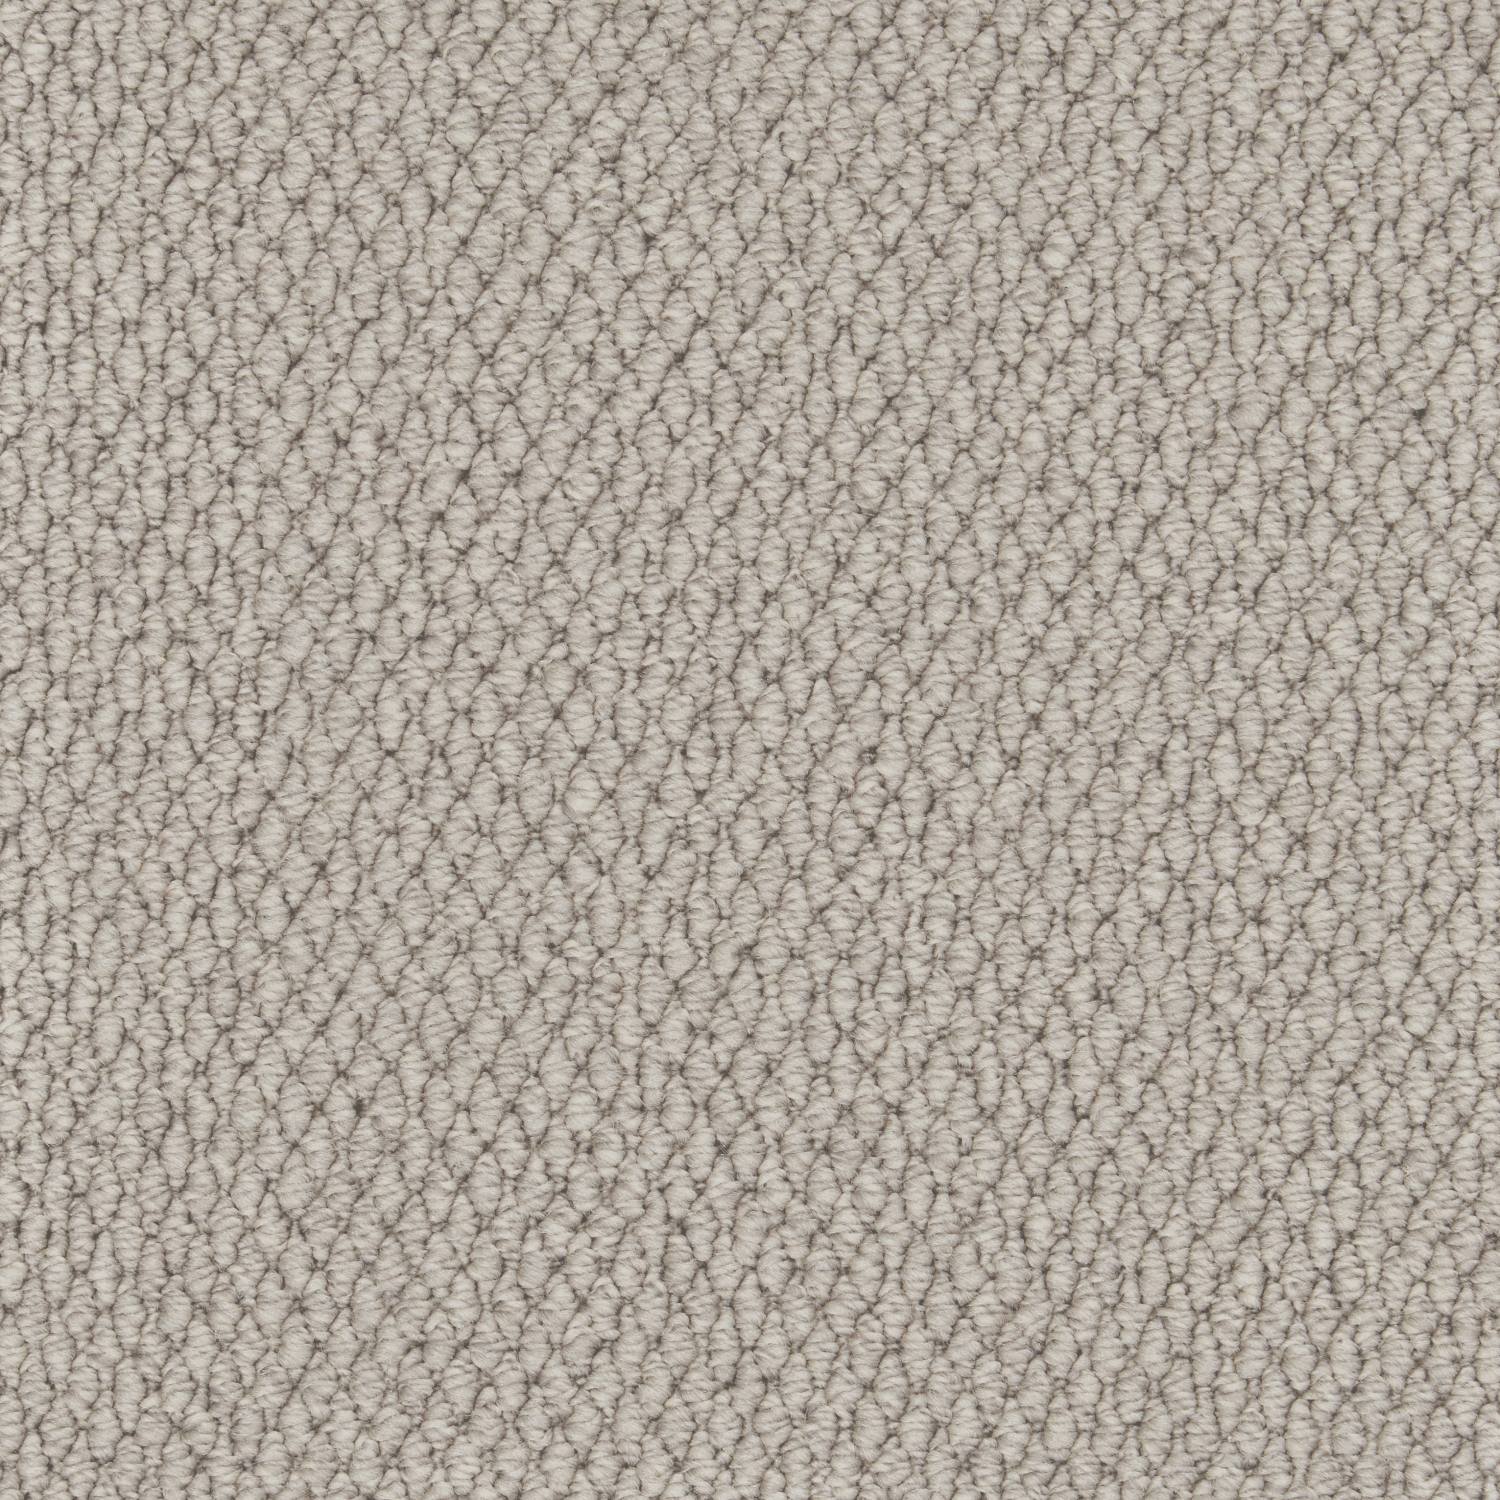 Rural Textures Loop Carpet - Rainfall Weave